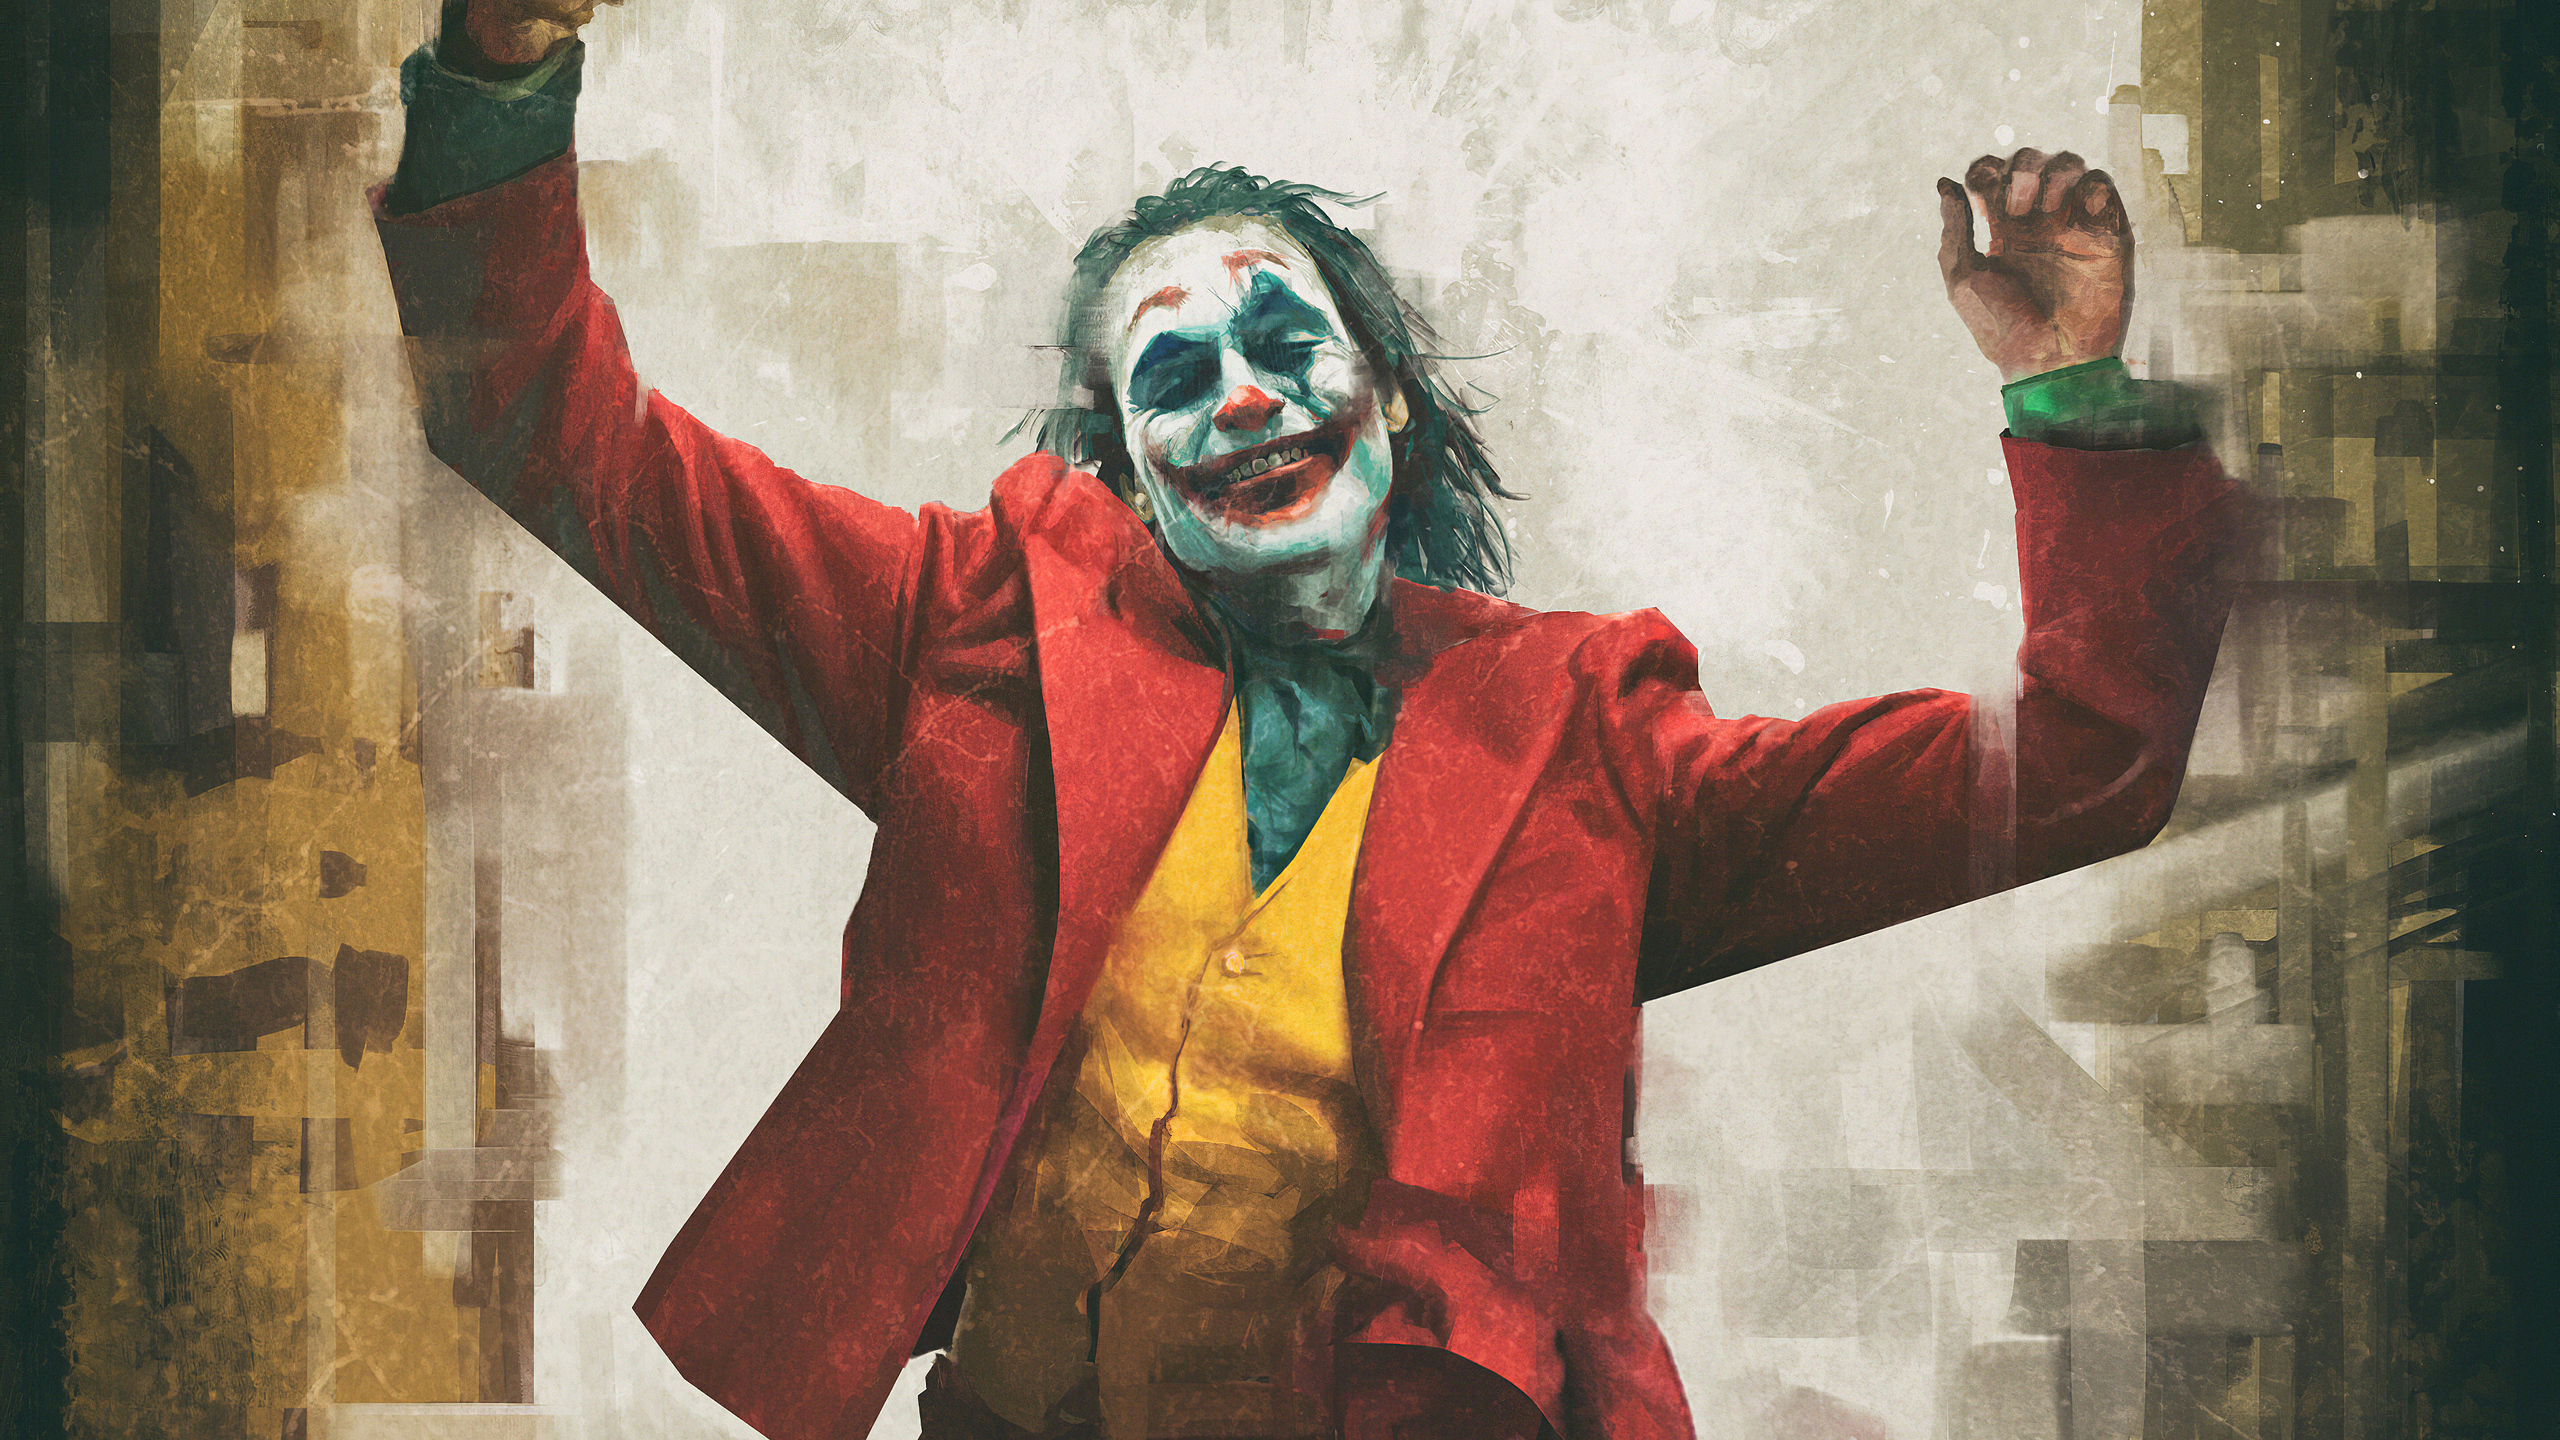 Joker Hd Wallpaper 4k Download Full Screen - Free Download Joker 2019 ...